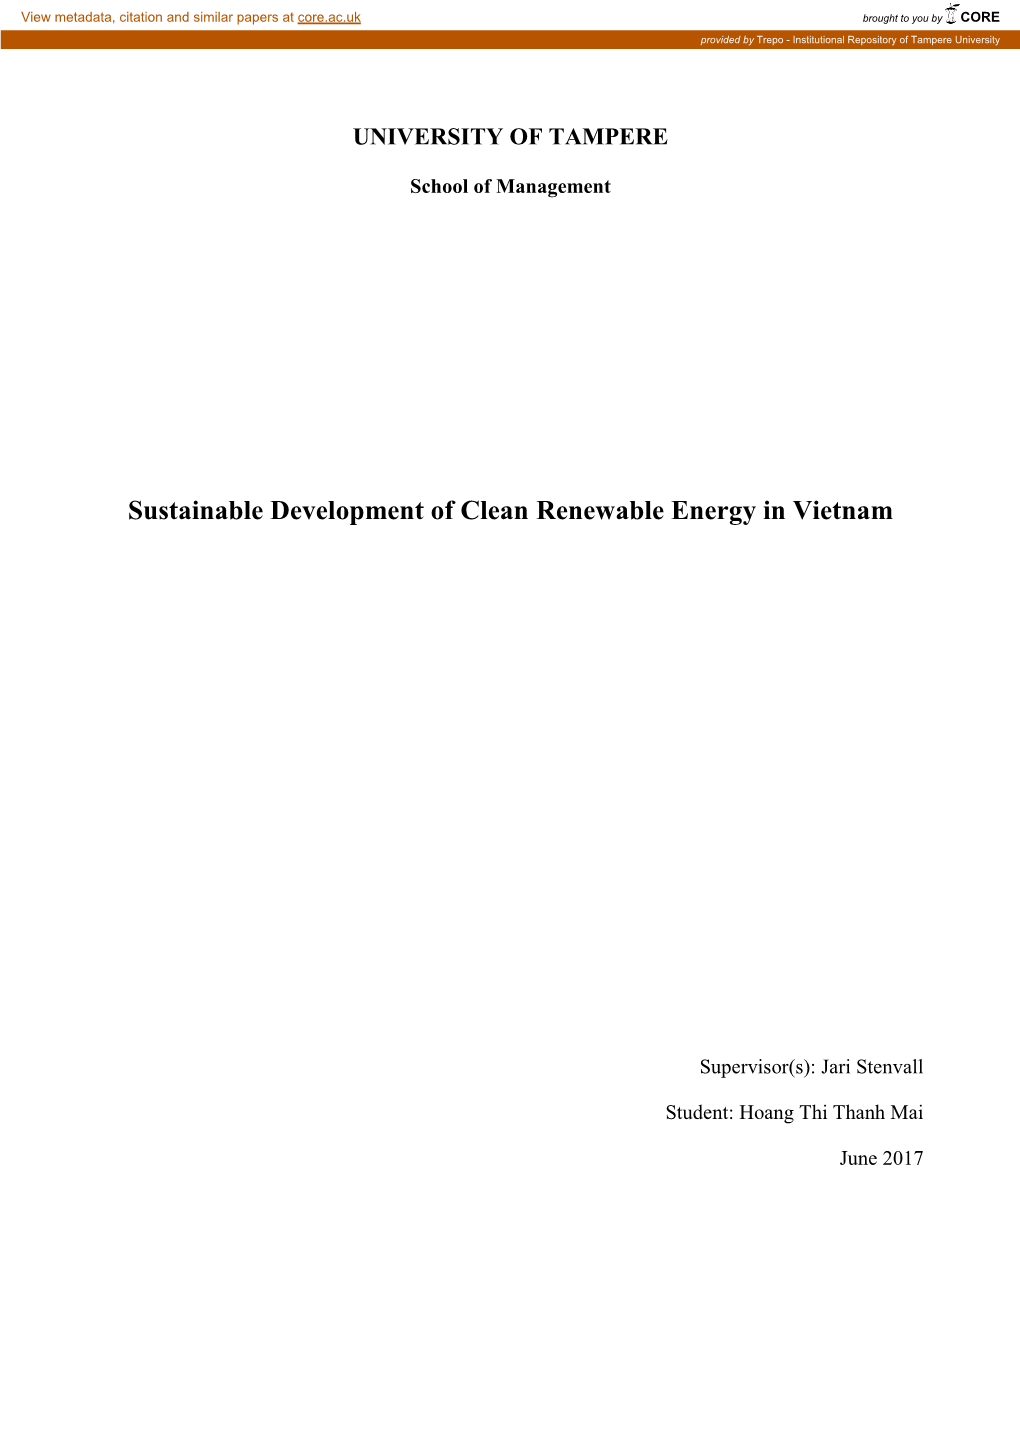 Sustainable Development of Clean Renewable Energy in Vietnam